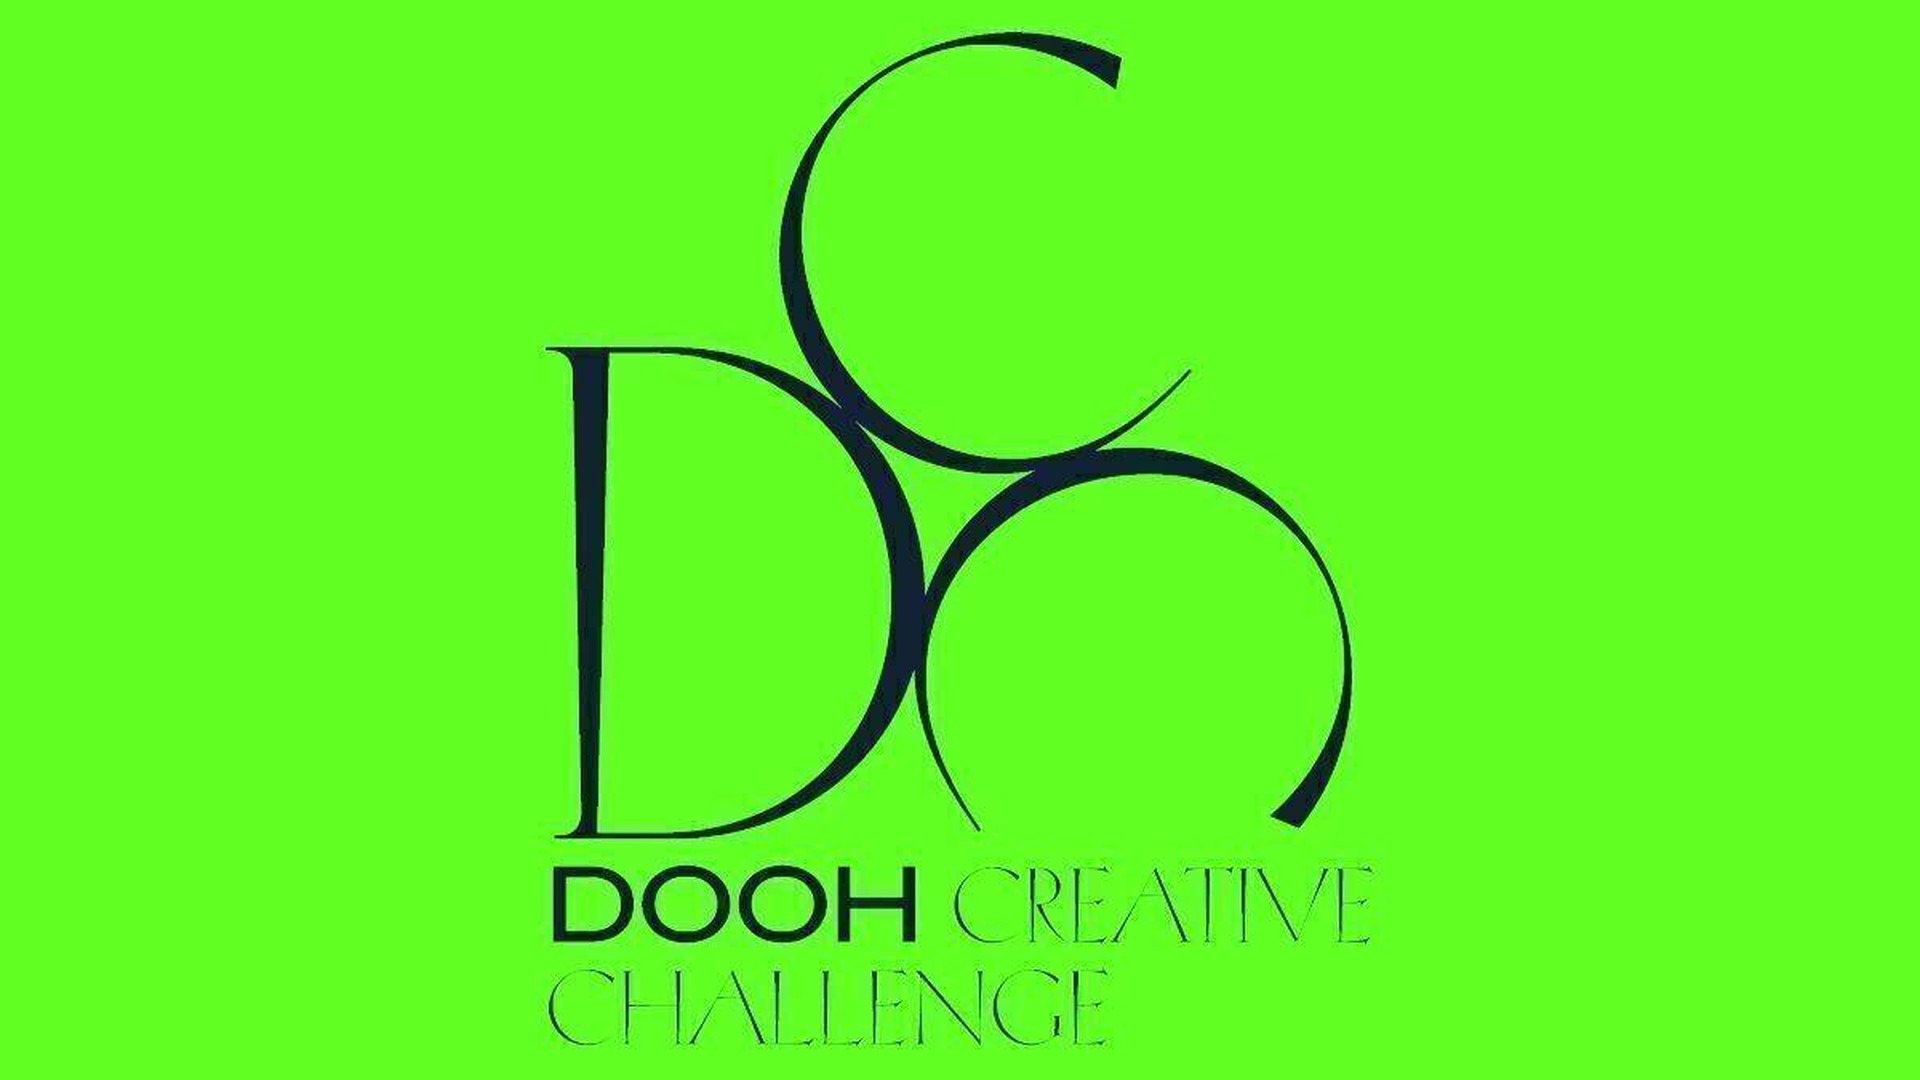 Neue-Runde-der-DOOH-Challenge-Jetzt-einreichen4_gross.jpg